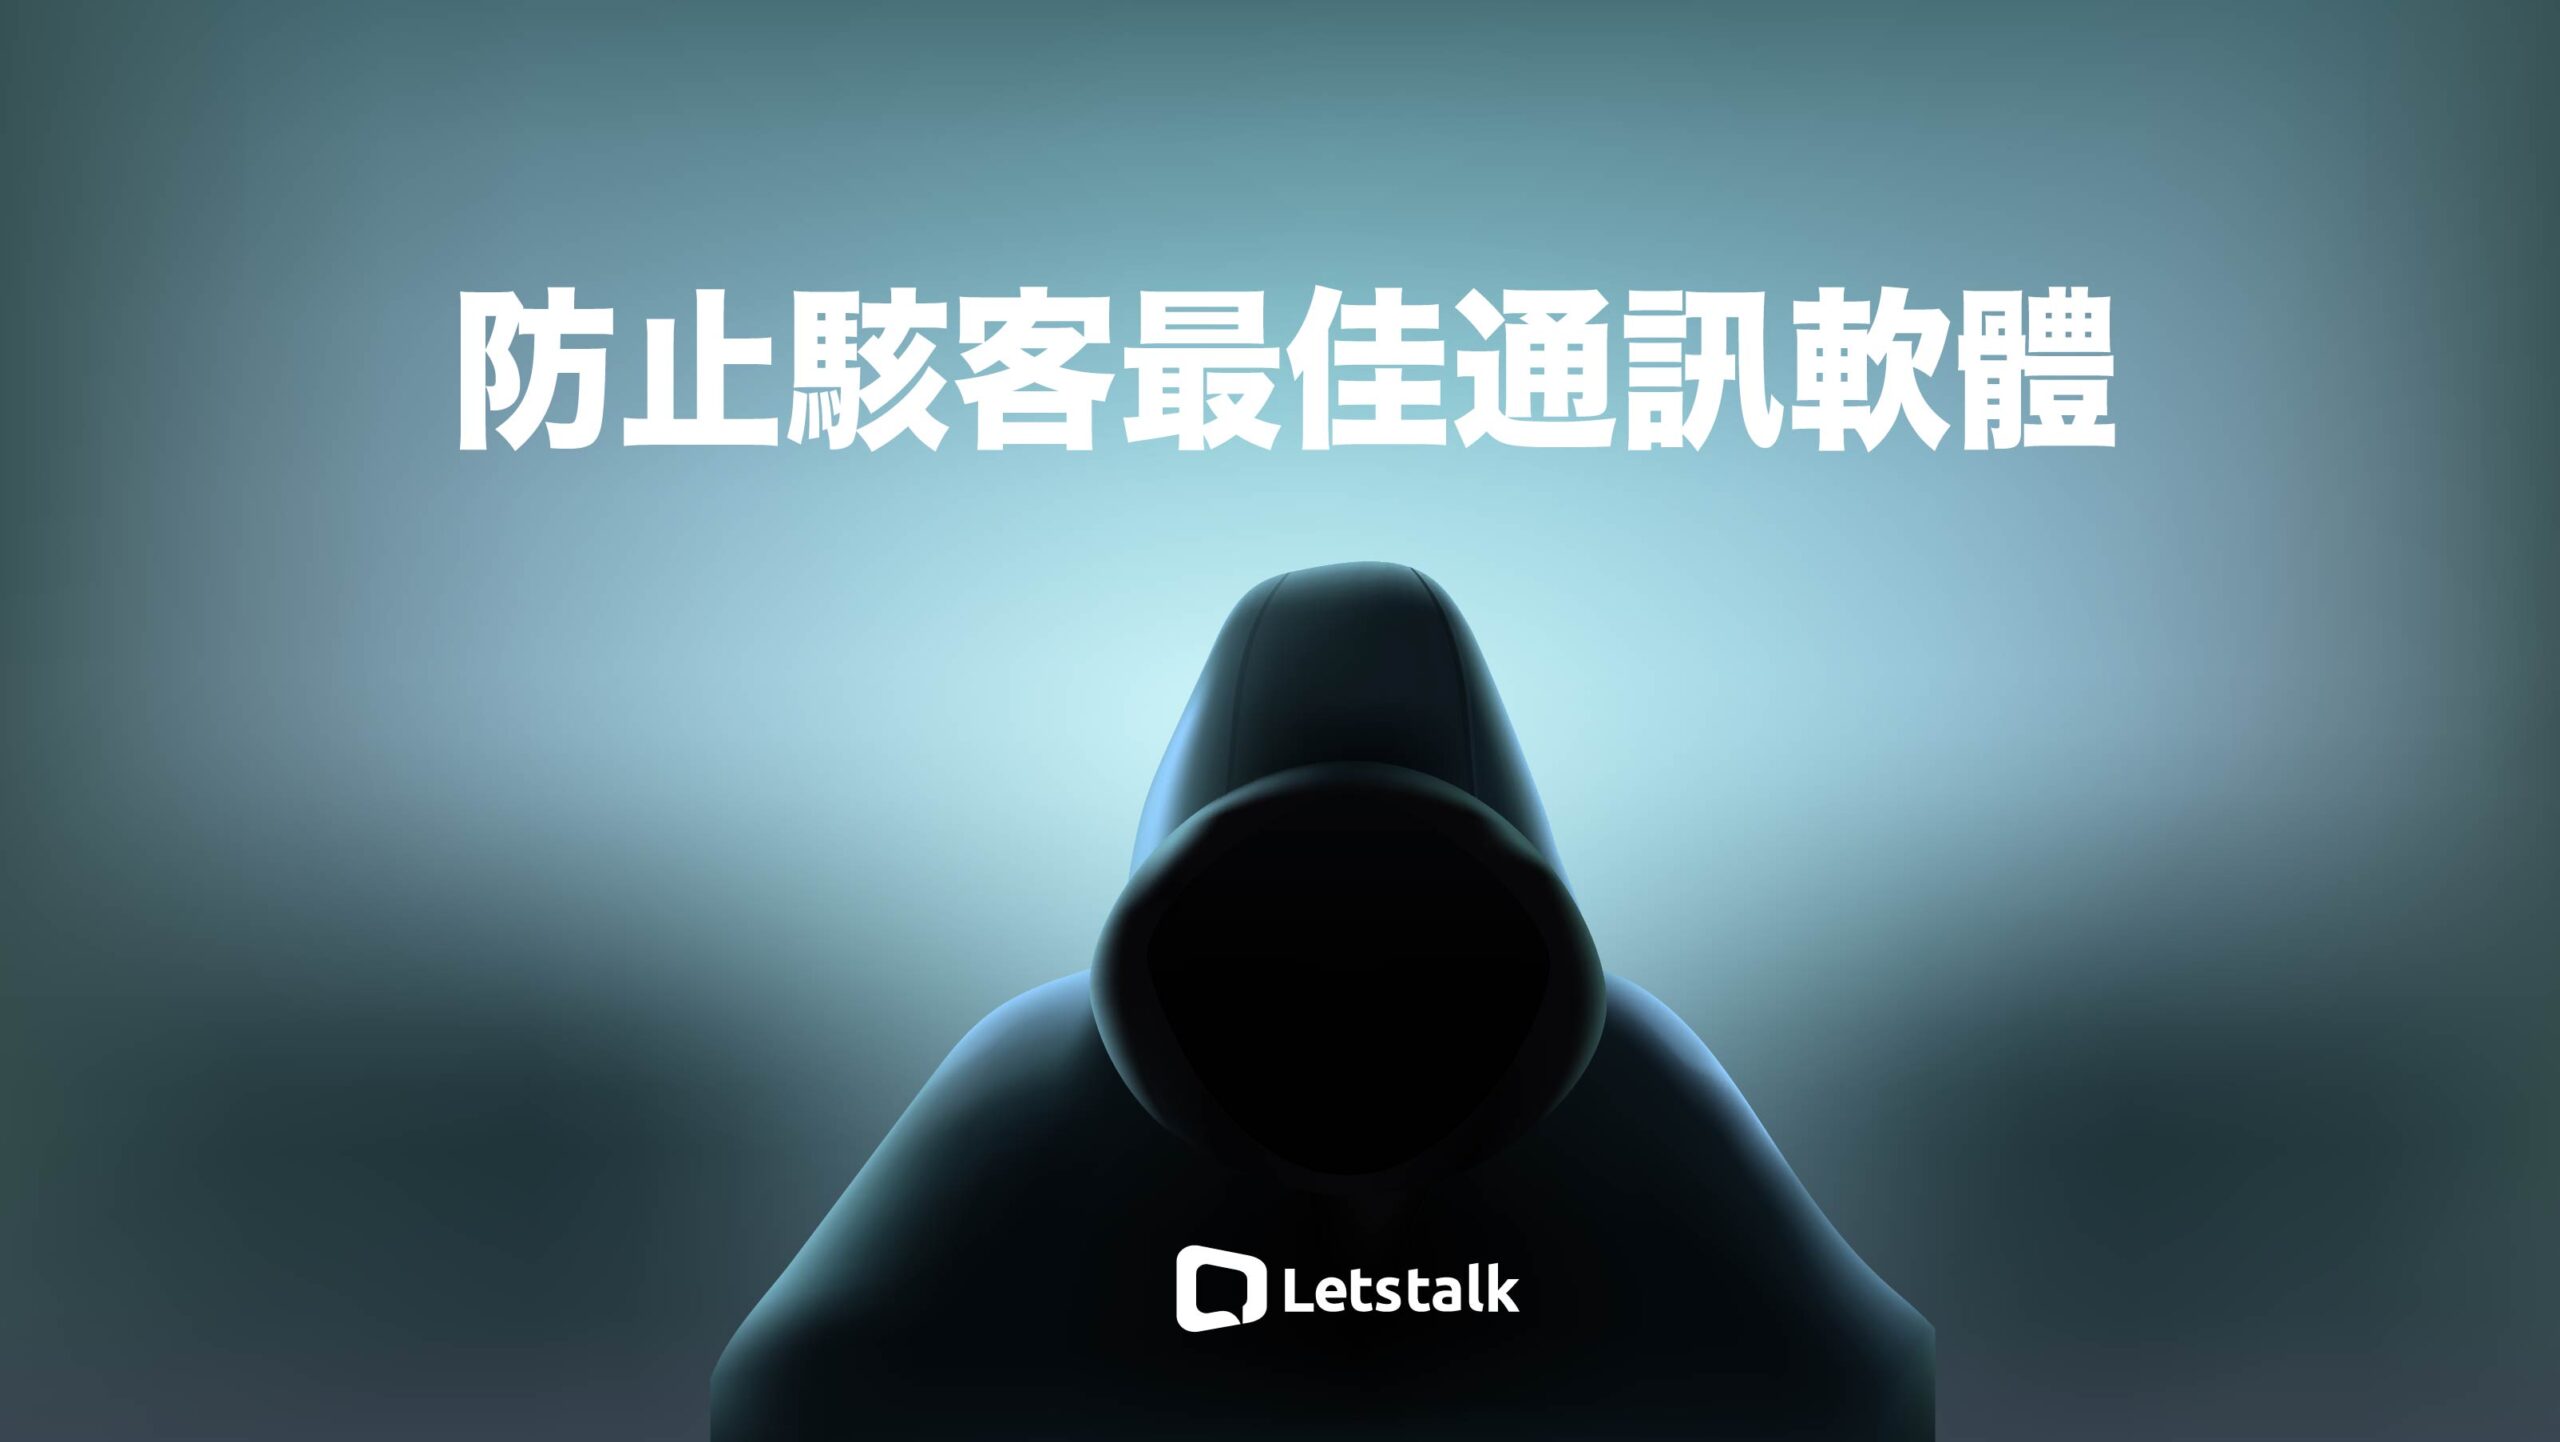 Letstalk中文版是防止骇客最佳通讯软体